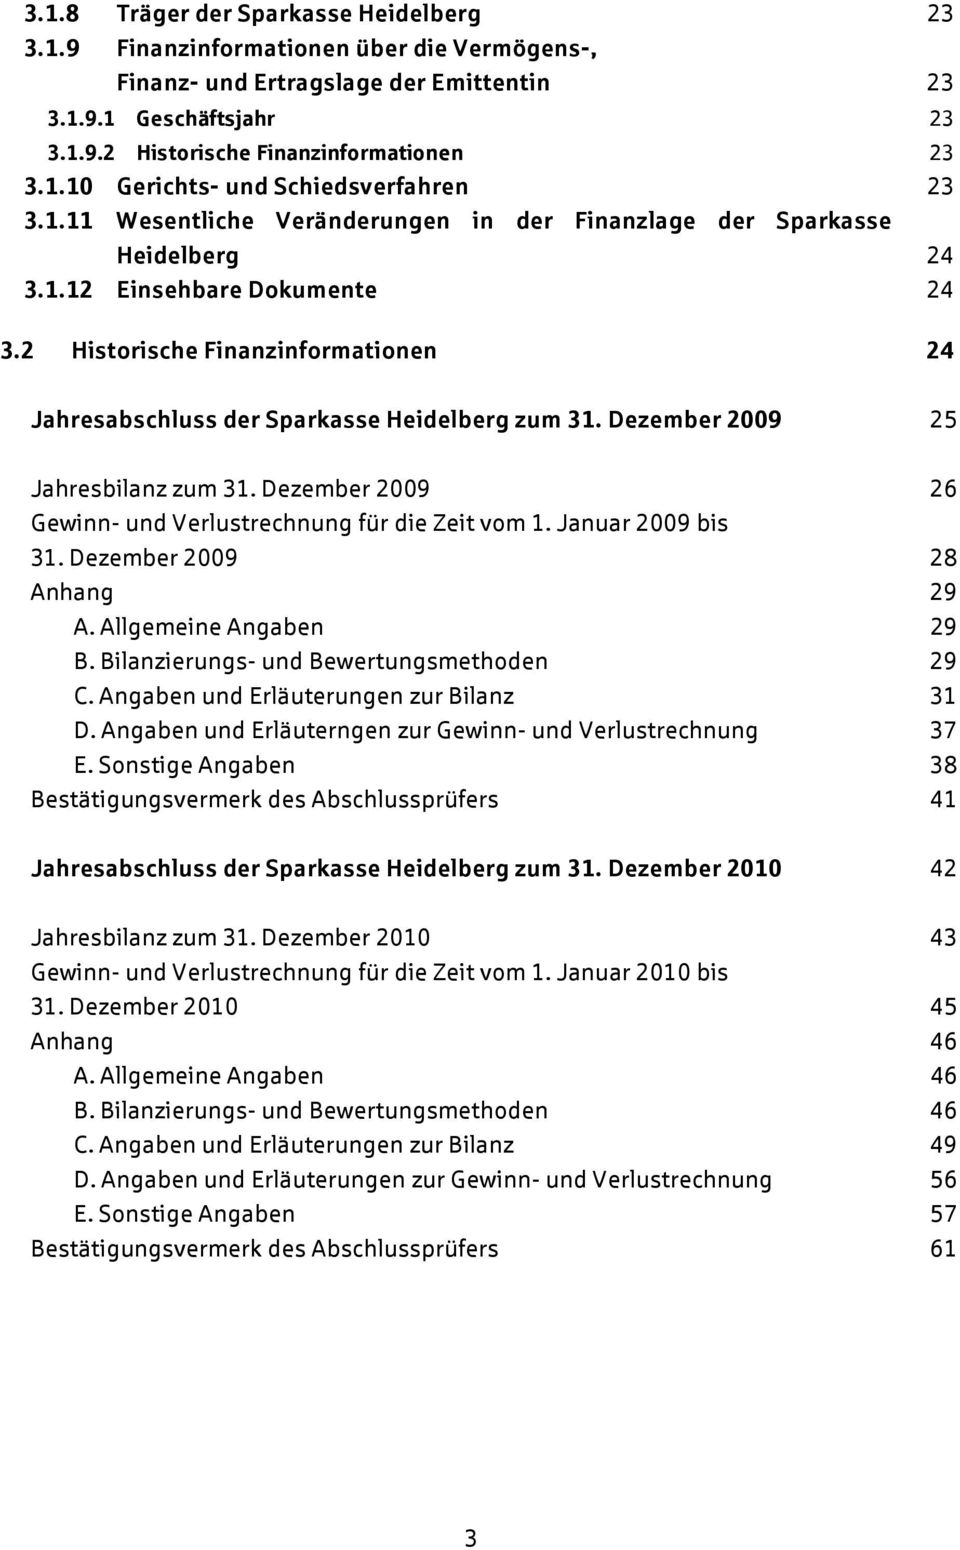 2 Historische Finanzinformationen 24 Jahresabschluss der Sparkasse Heidelberg zum 31. Dezember 2009 25 Jahresbilanz zum 31. Dezember 2009 26 Gewinn- und Verlustrechnung für die Zeit vom 1.